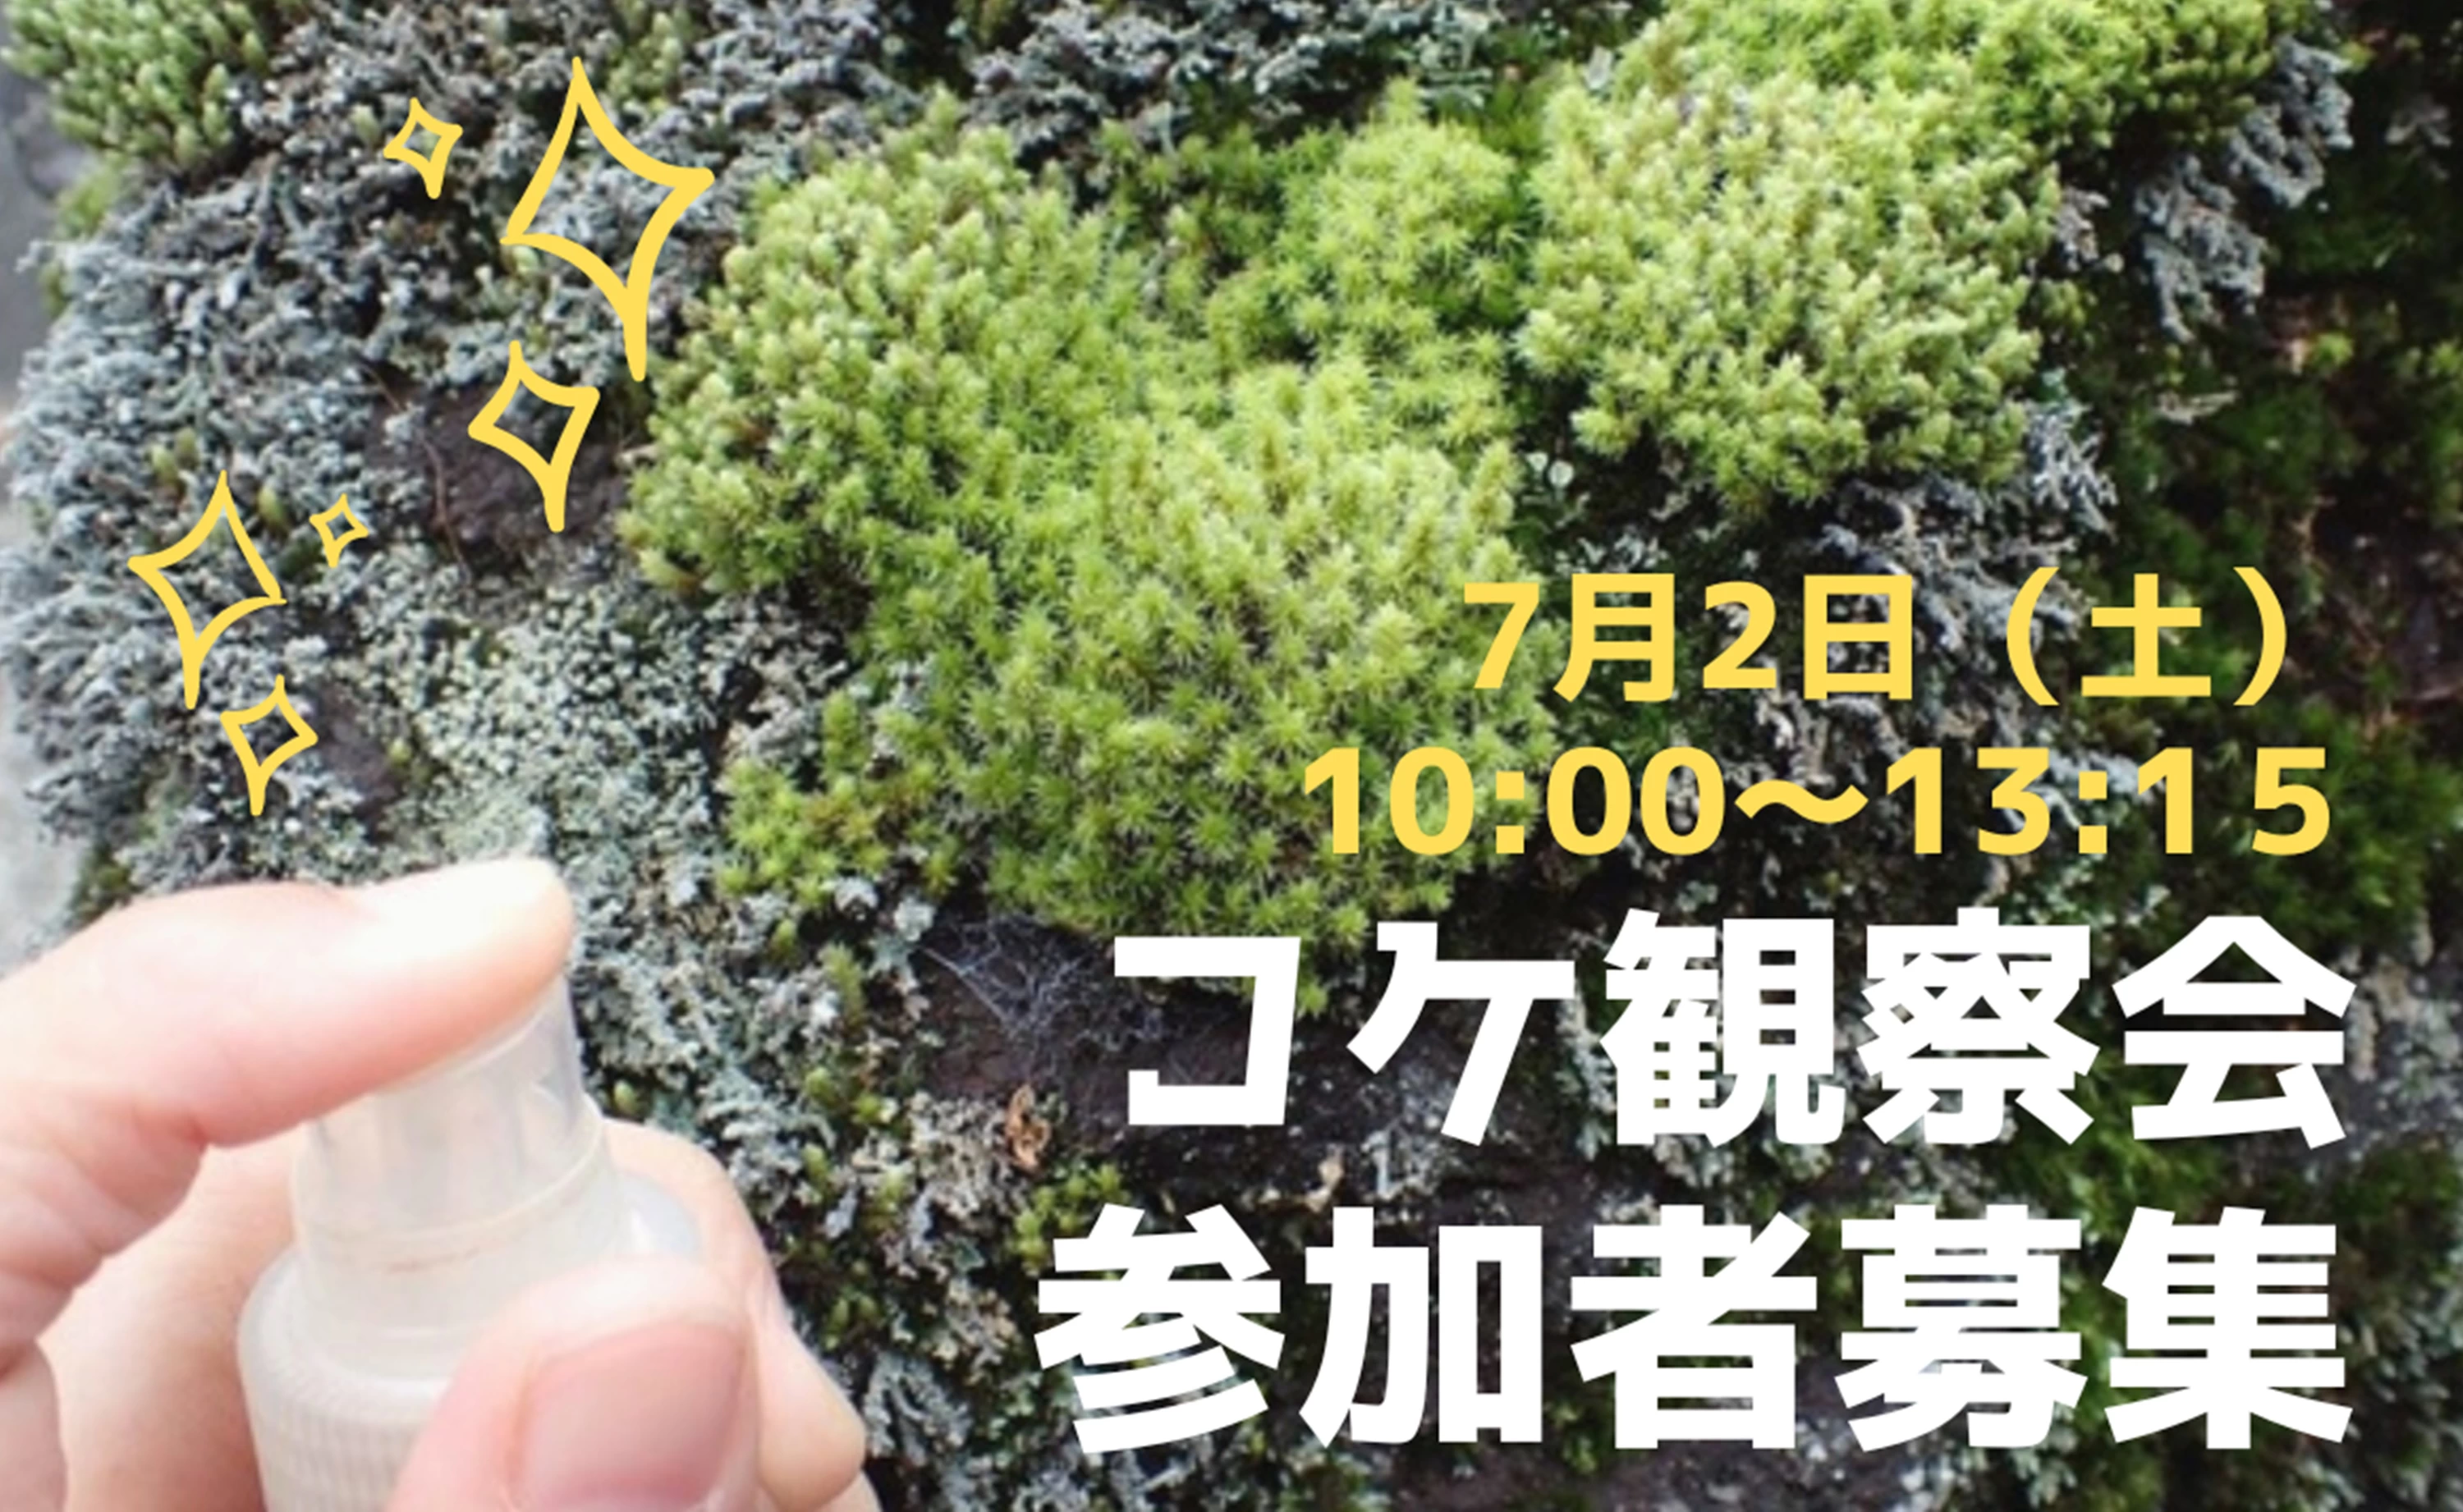 7月2日（土）は池上本門寺でコケに癒される。 コケ愛好家・藤井久子さんとめぐるコケ観察会、参加者募集！